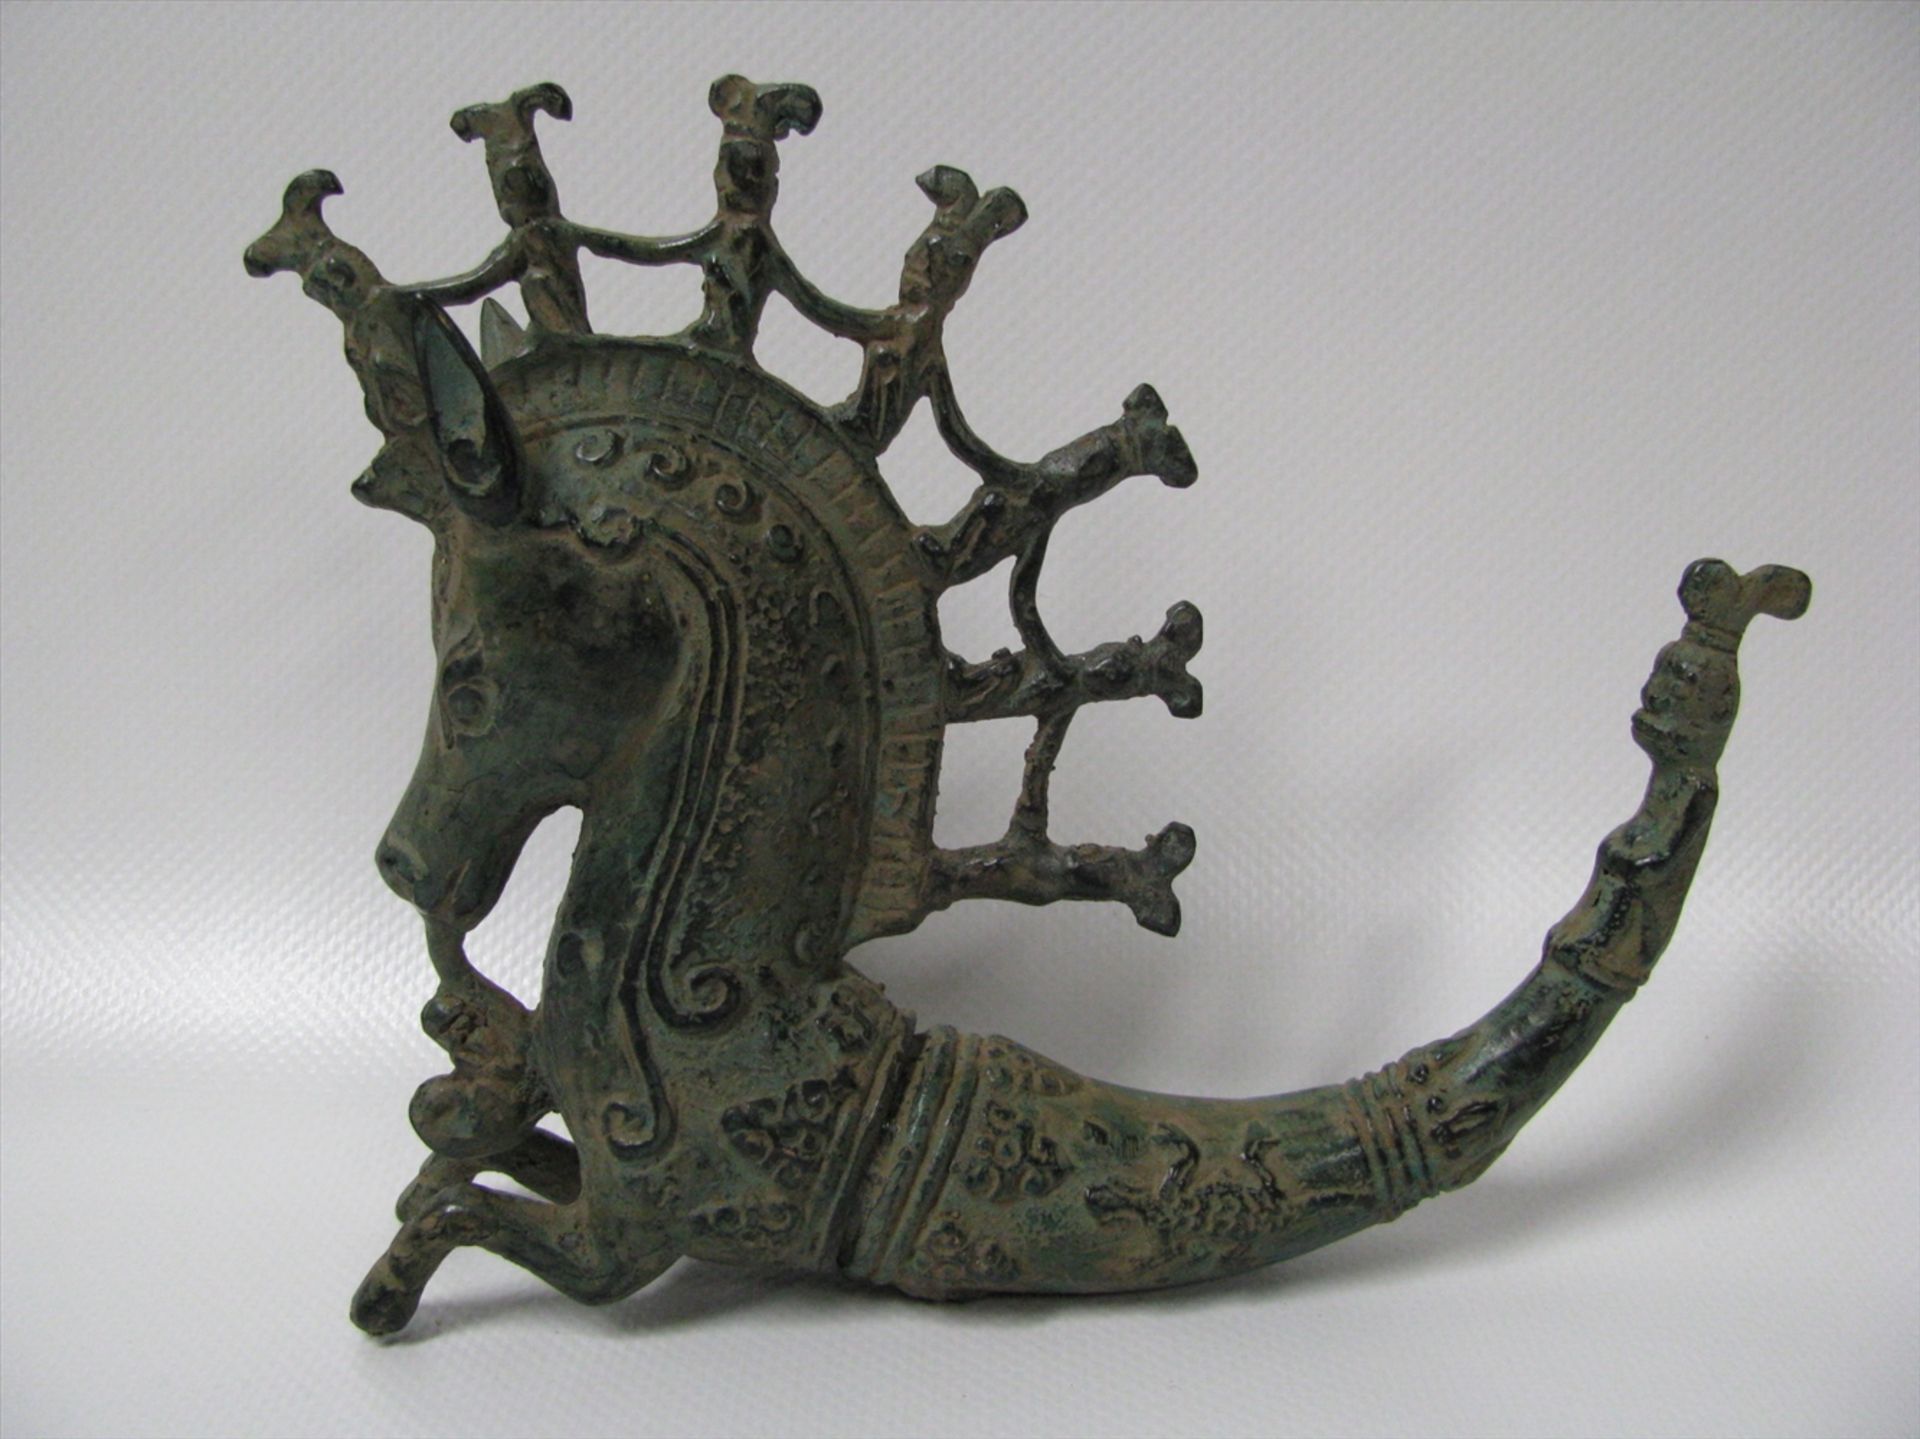 Gefäß in Form eines Pferds, Bronze patiniert, nach antikem Vorbild, 13 x 16 x 3,5 cm.- - -19.00 %